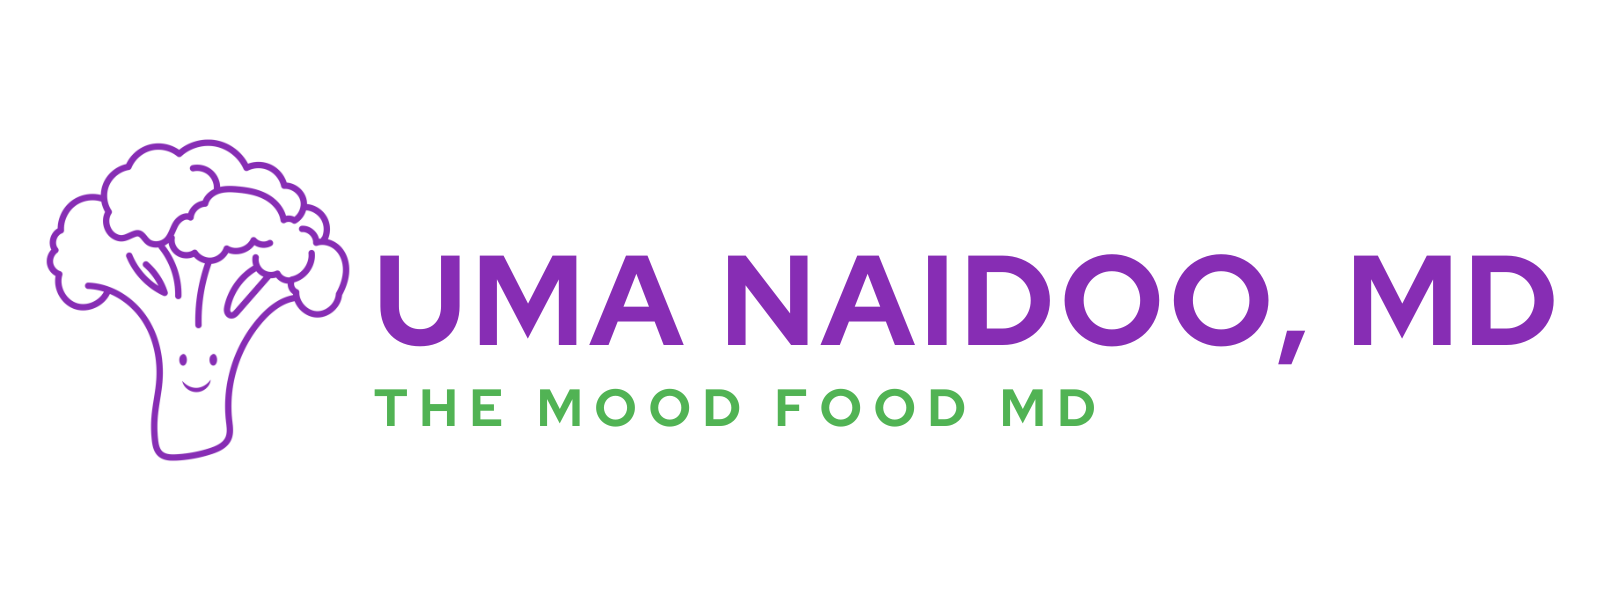 Mood Food Labs + Uma Naidoo, MD